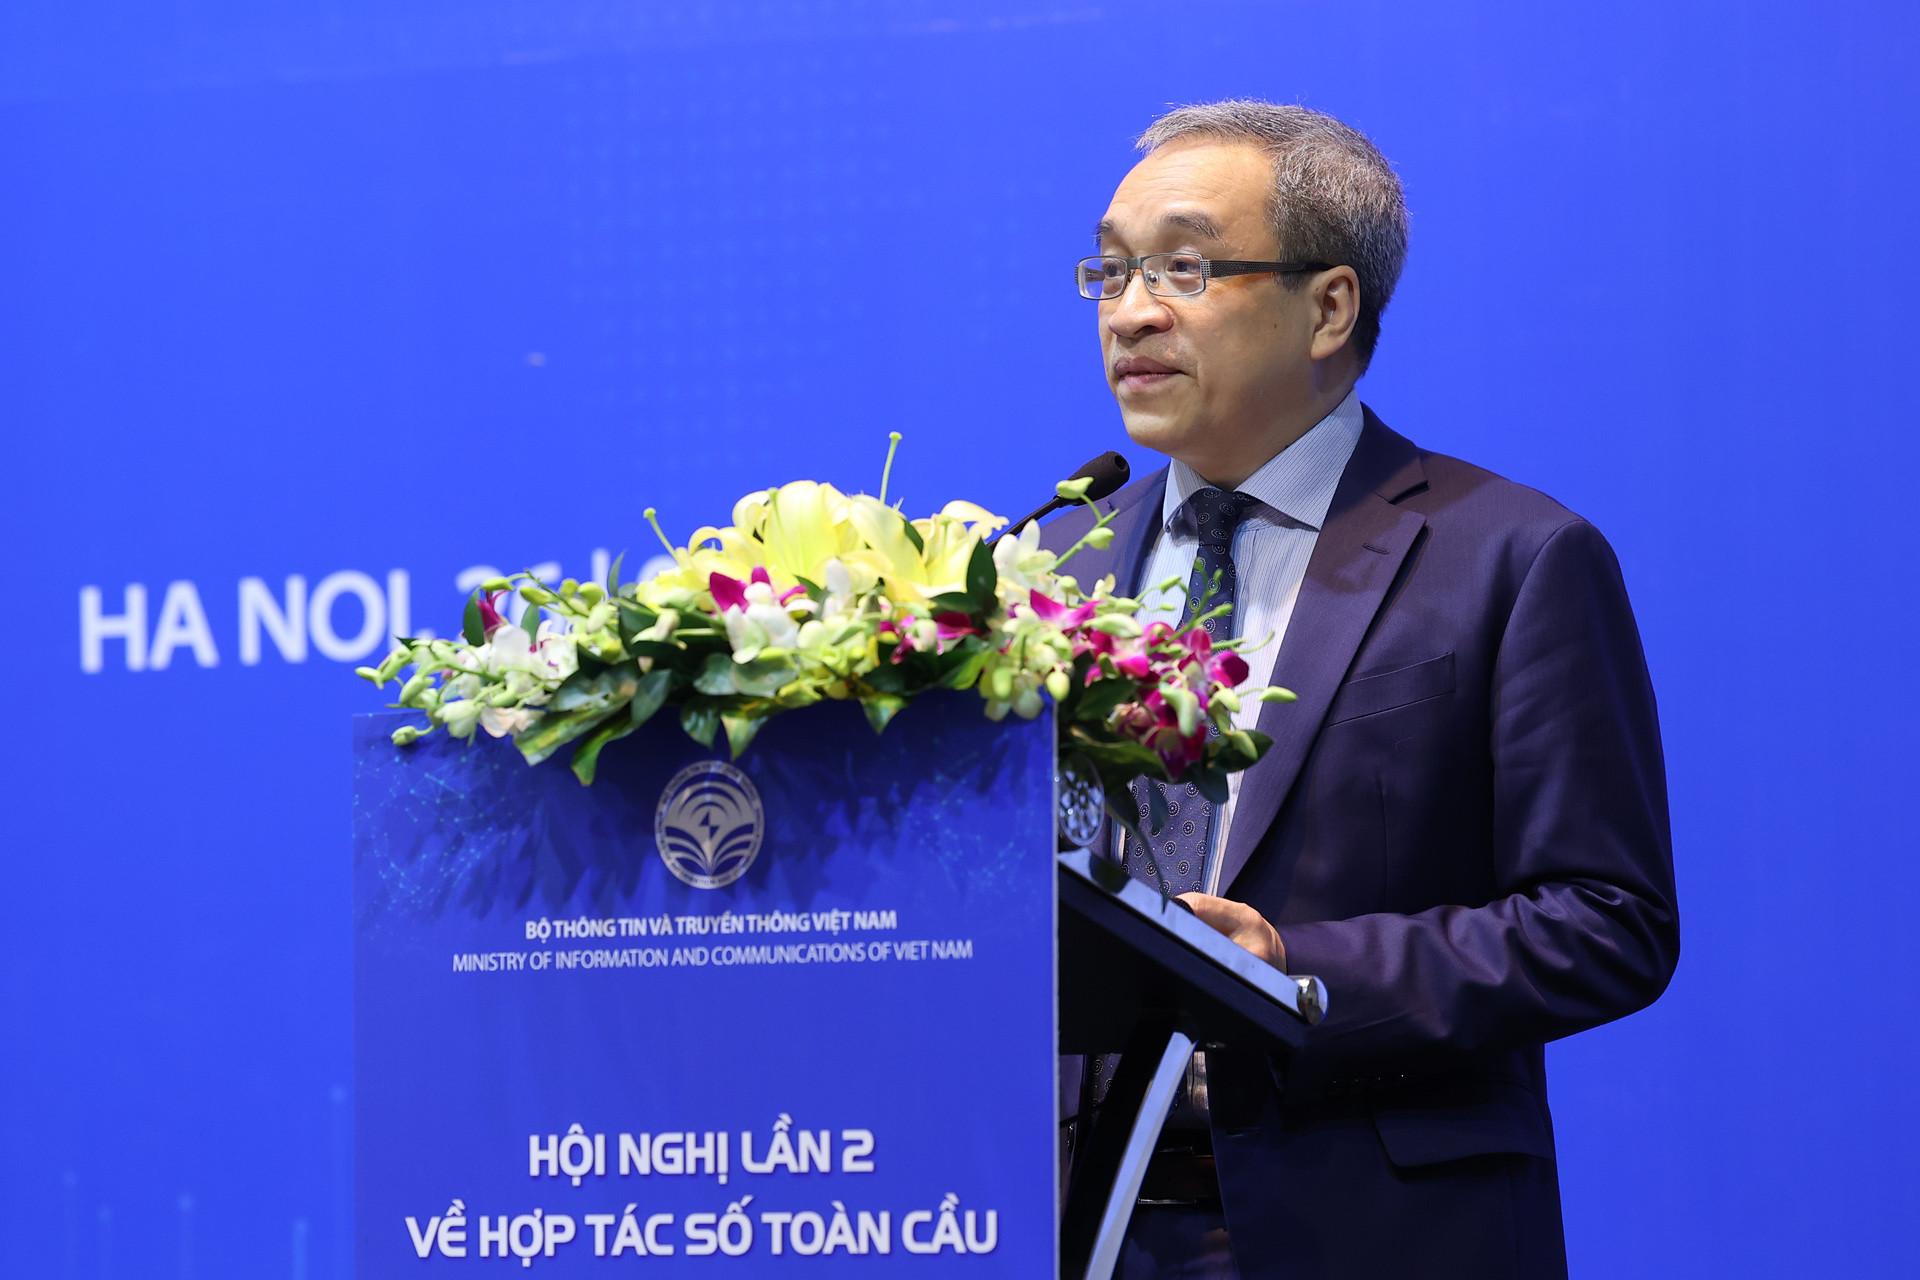 
Ông Phan Tâm, Thứ Trưởng Bộ Thông tin và Truyền thông
